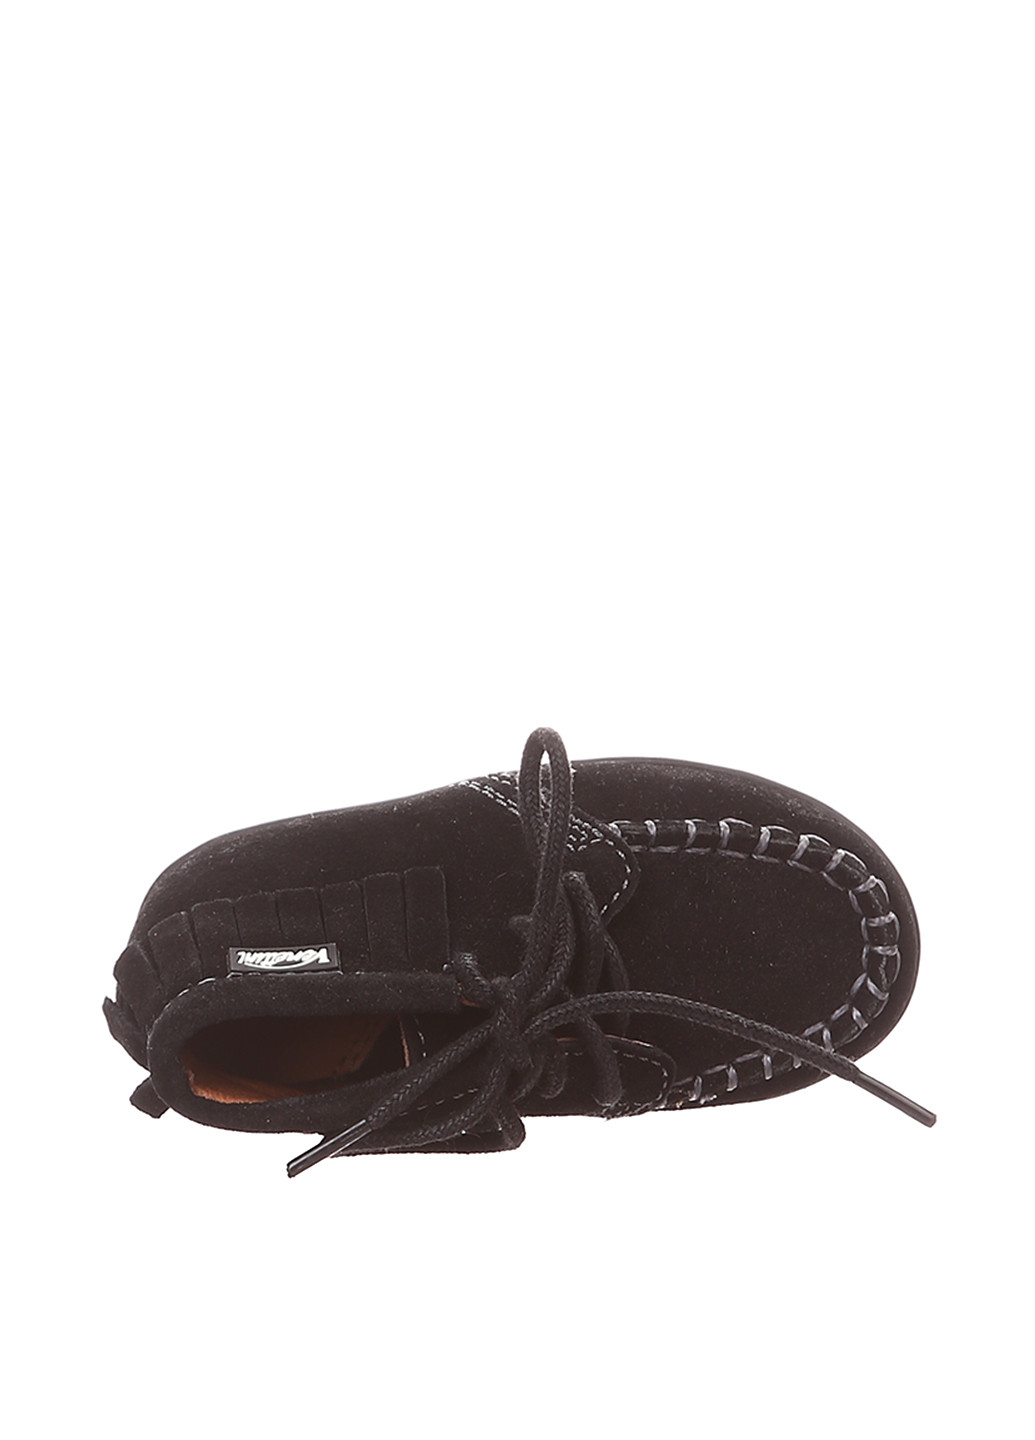 Черные кэжуал осенние ботинки Venettini